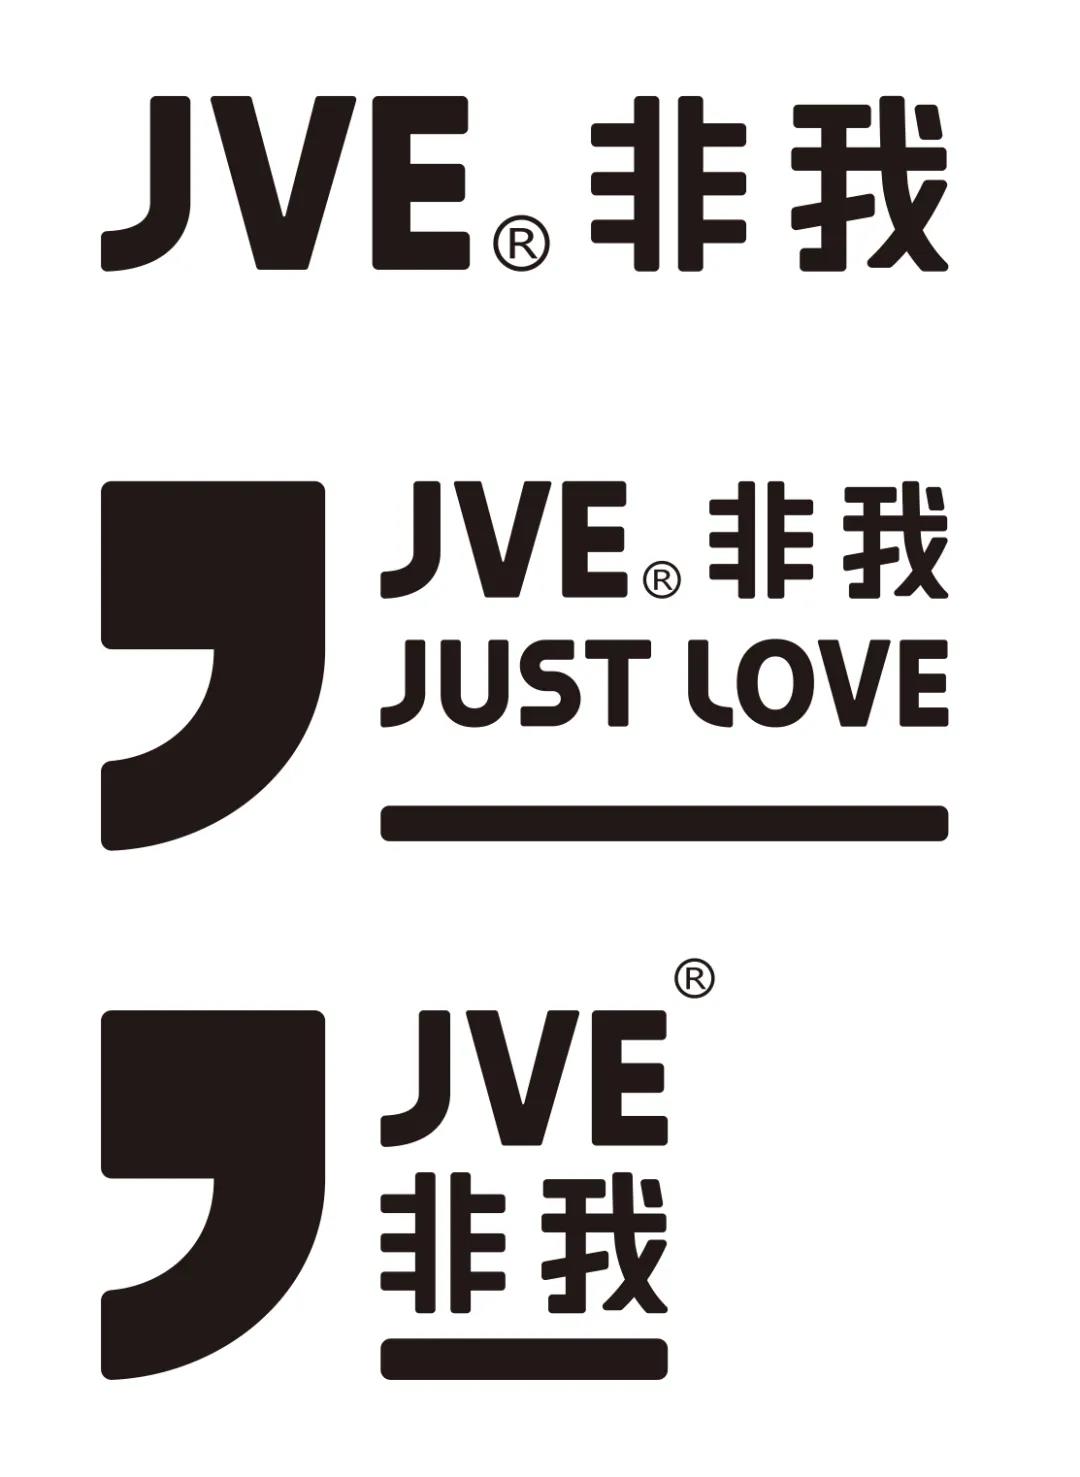 just love是jve的品牌理念; just love是社交